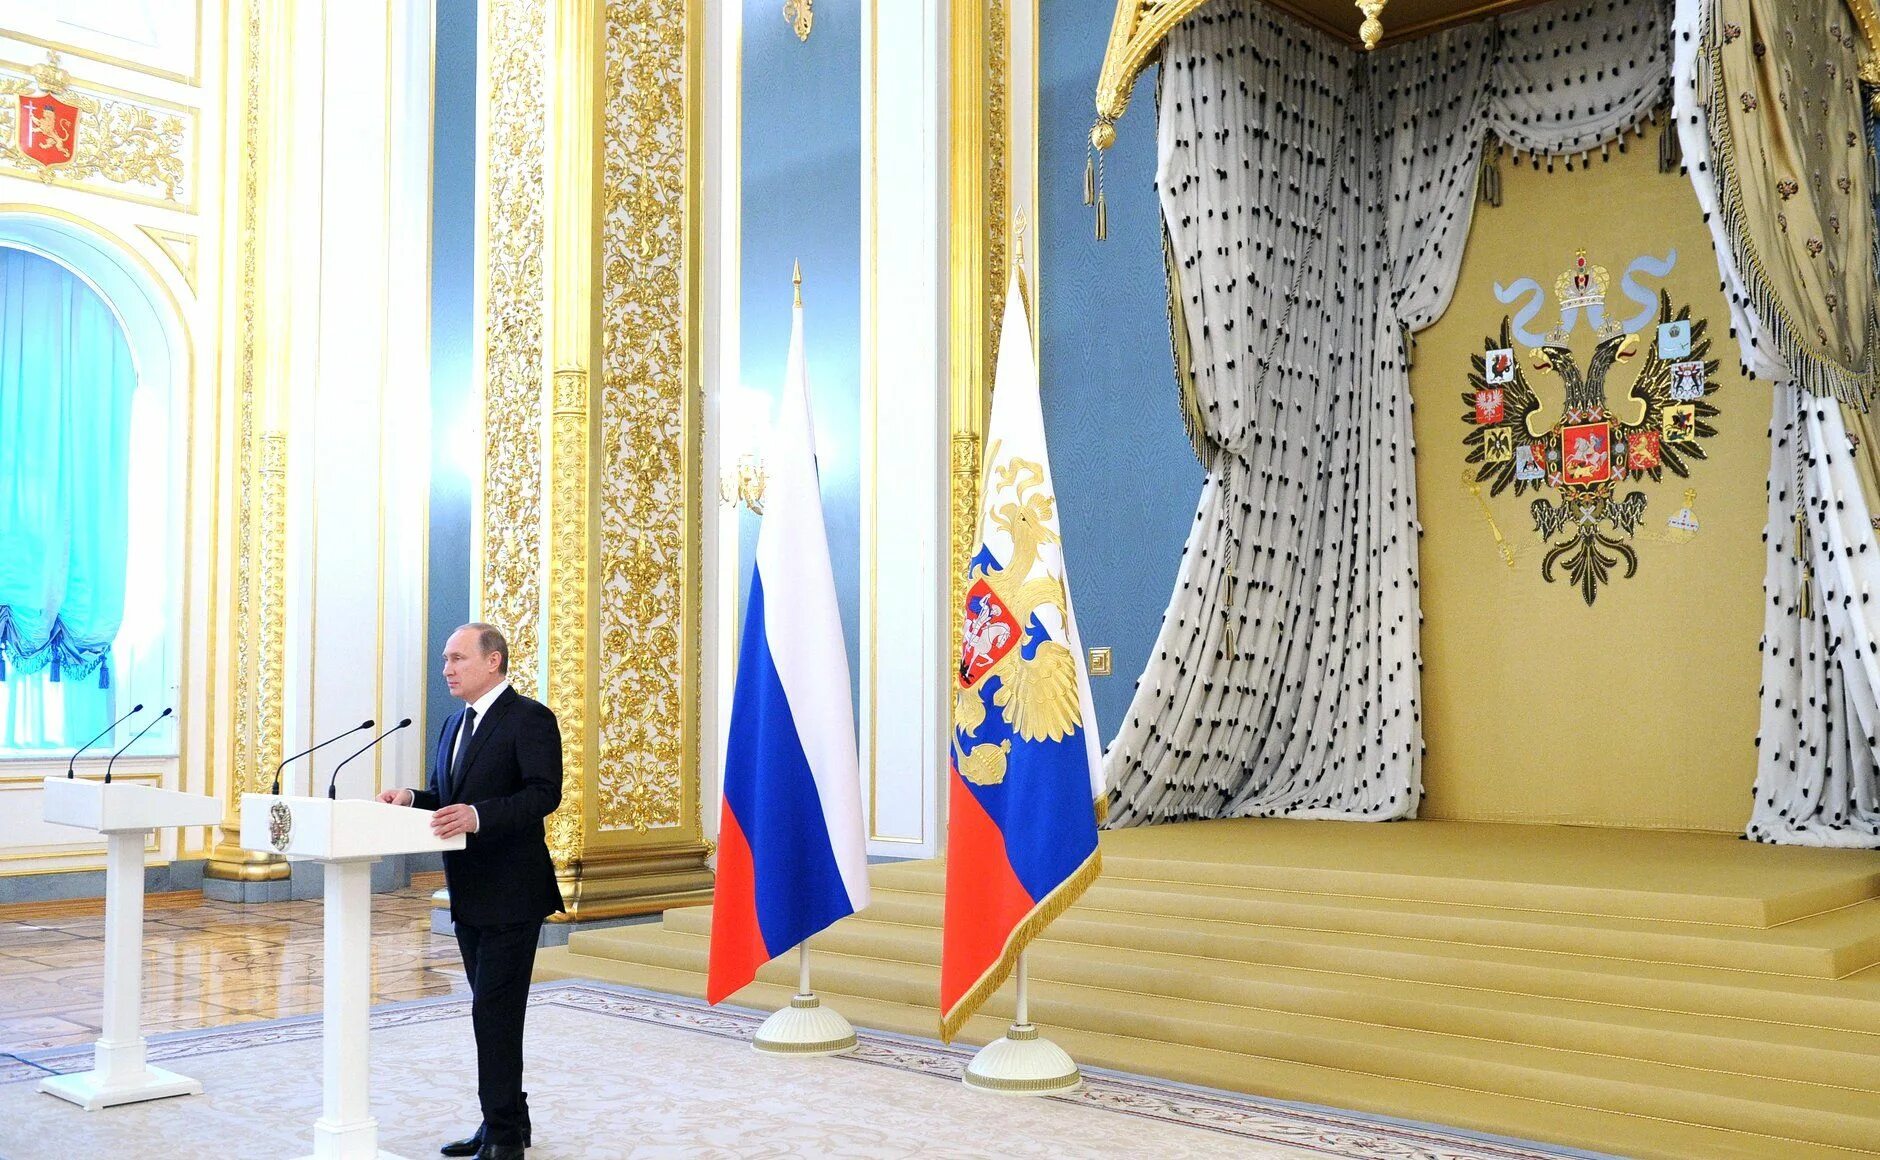 Президентский флаг. Штандарт президента России Кремля. Резиденция президента России в Кремле флаг. Зал награждения в Кремле.